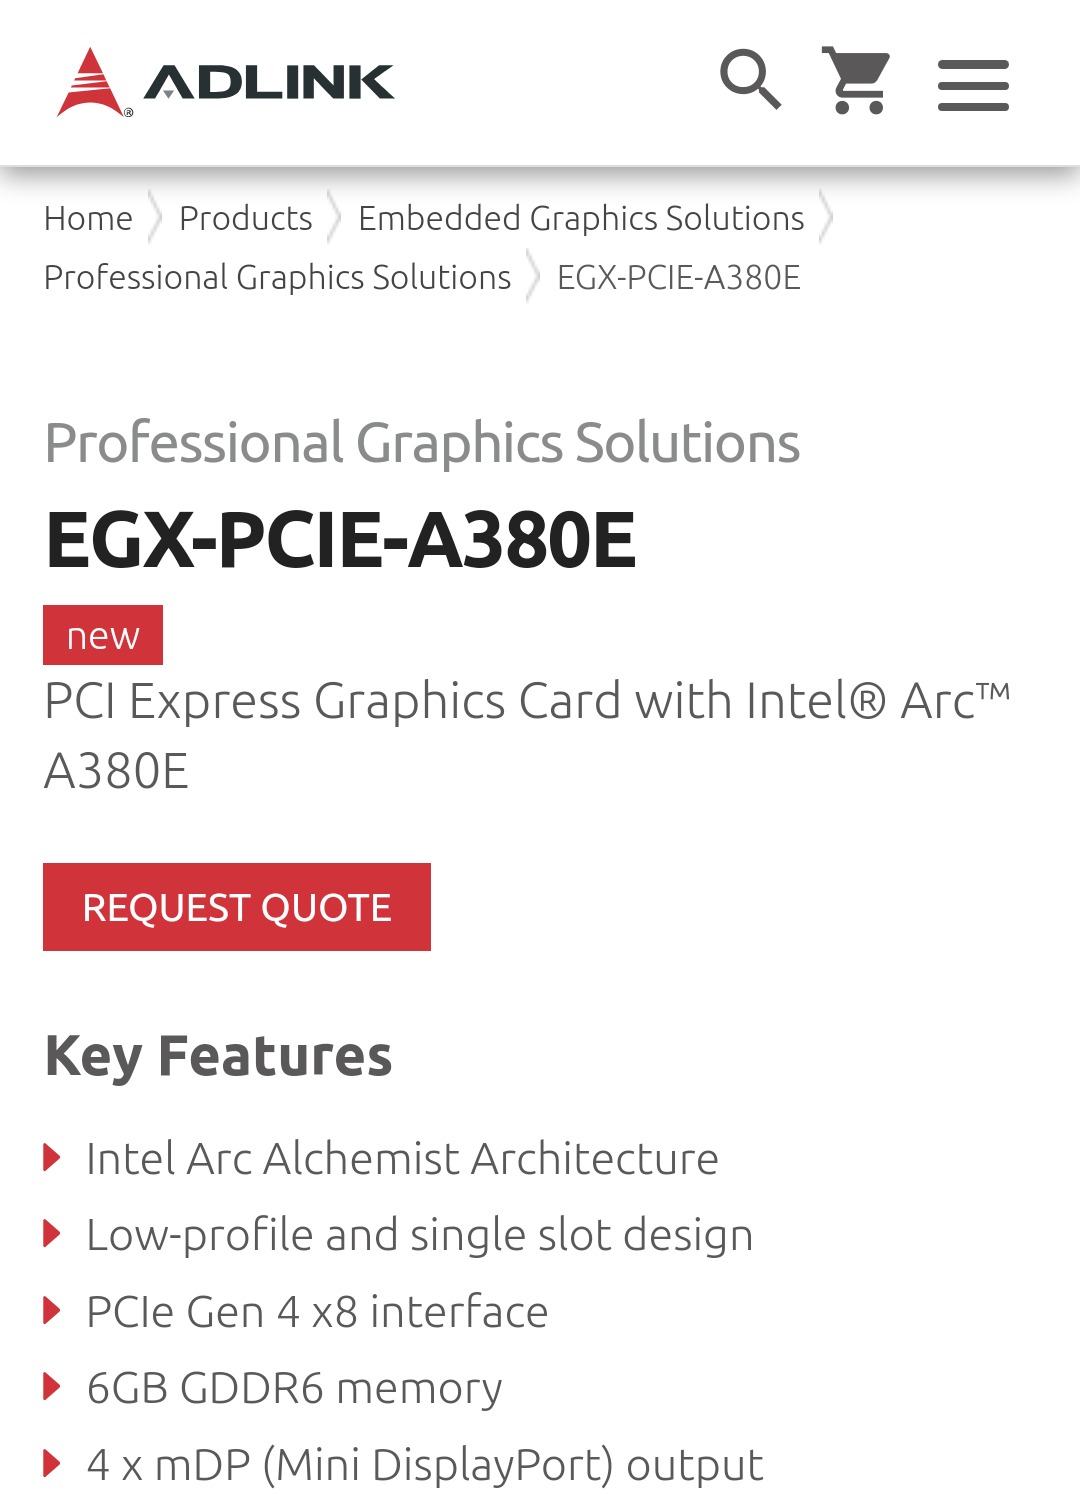 英特尔为锐炫 A750E / A580E 显卡注册 PCI ID，预计为嵌入式产品